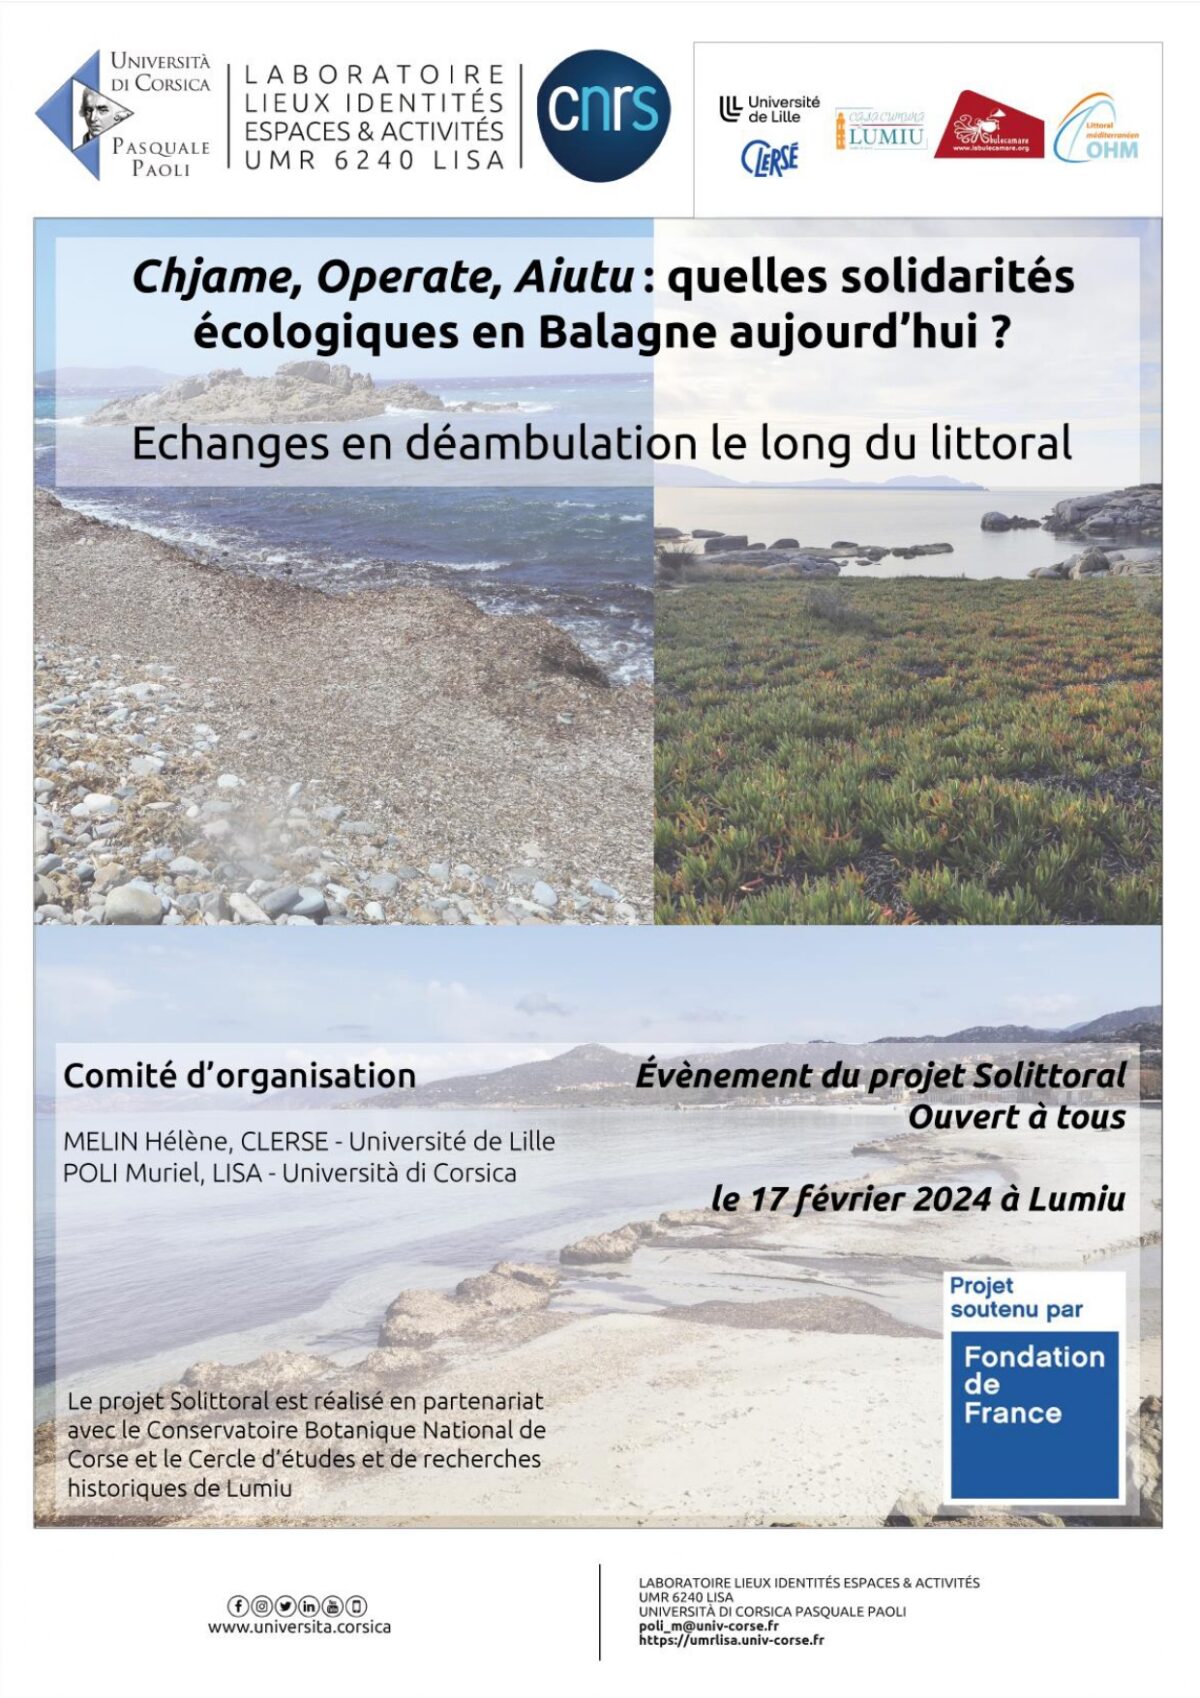 Chjame, Operate, Aiutu: quelles solidarités écologiques en Balagne aujourd’hui ?